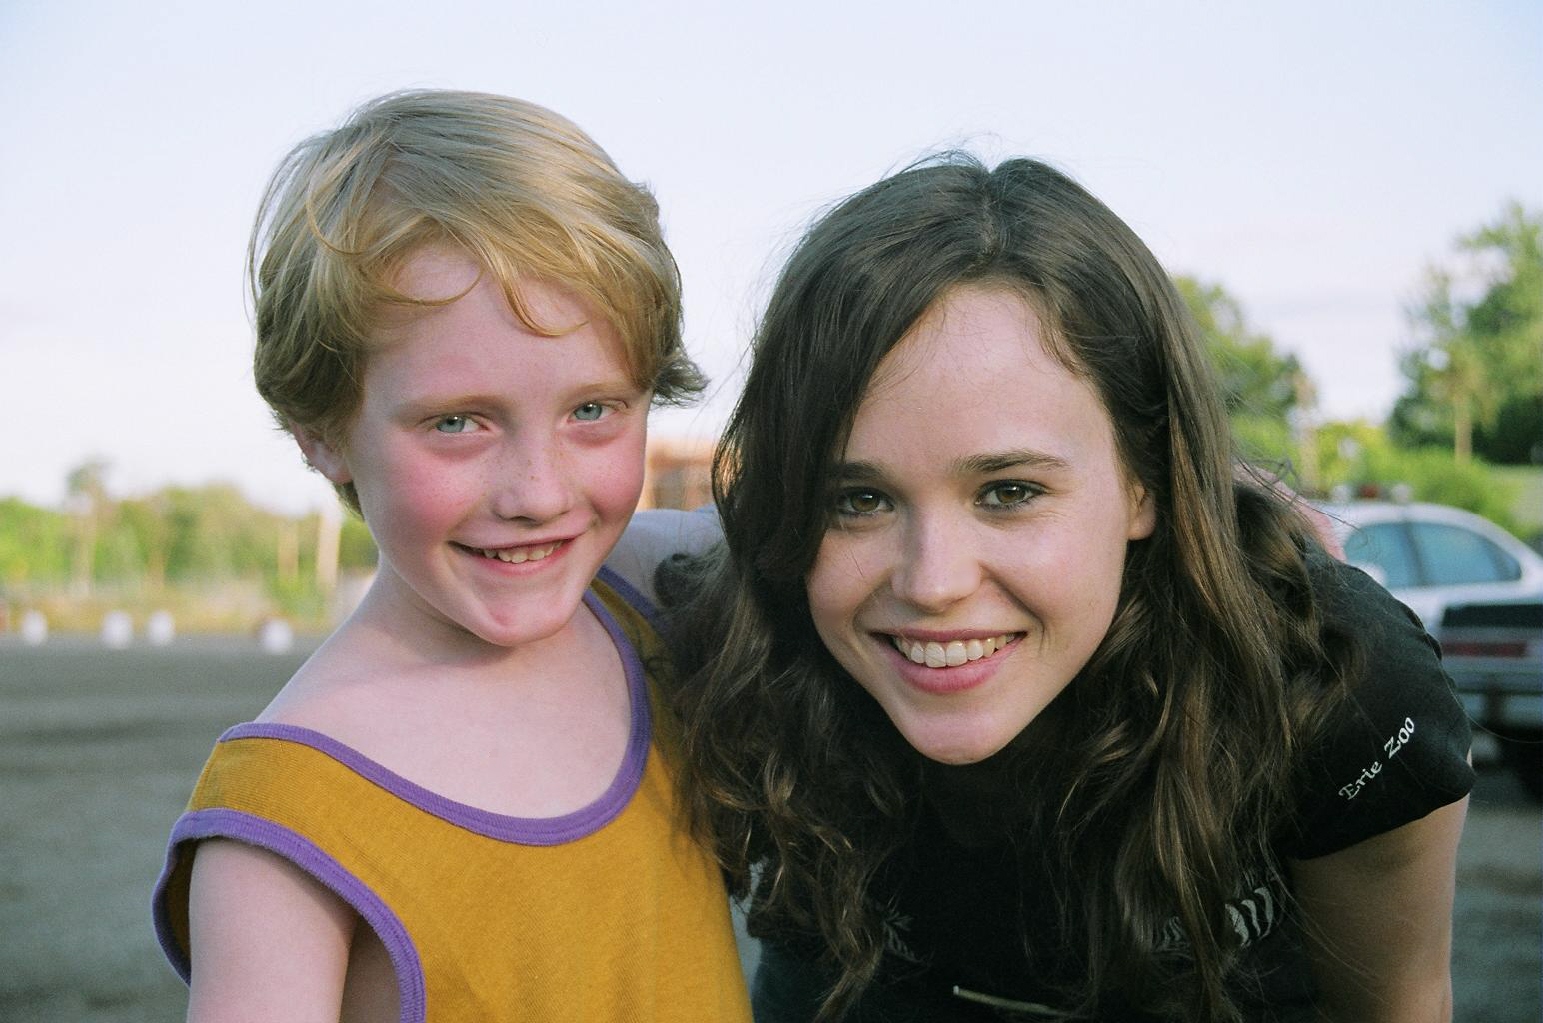 Austin Bickel & Ellen Page on set of 'Whip It'